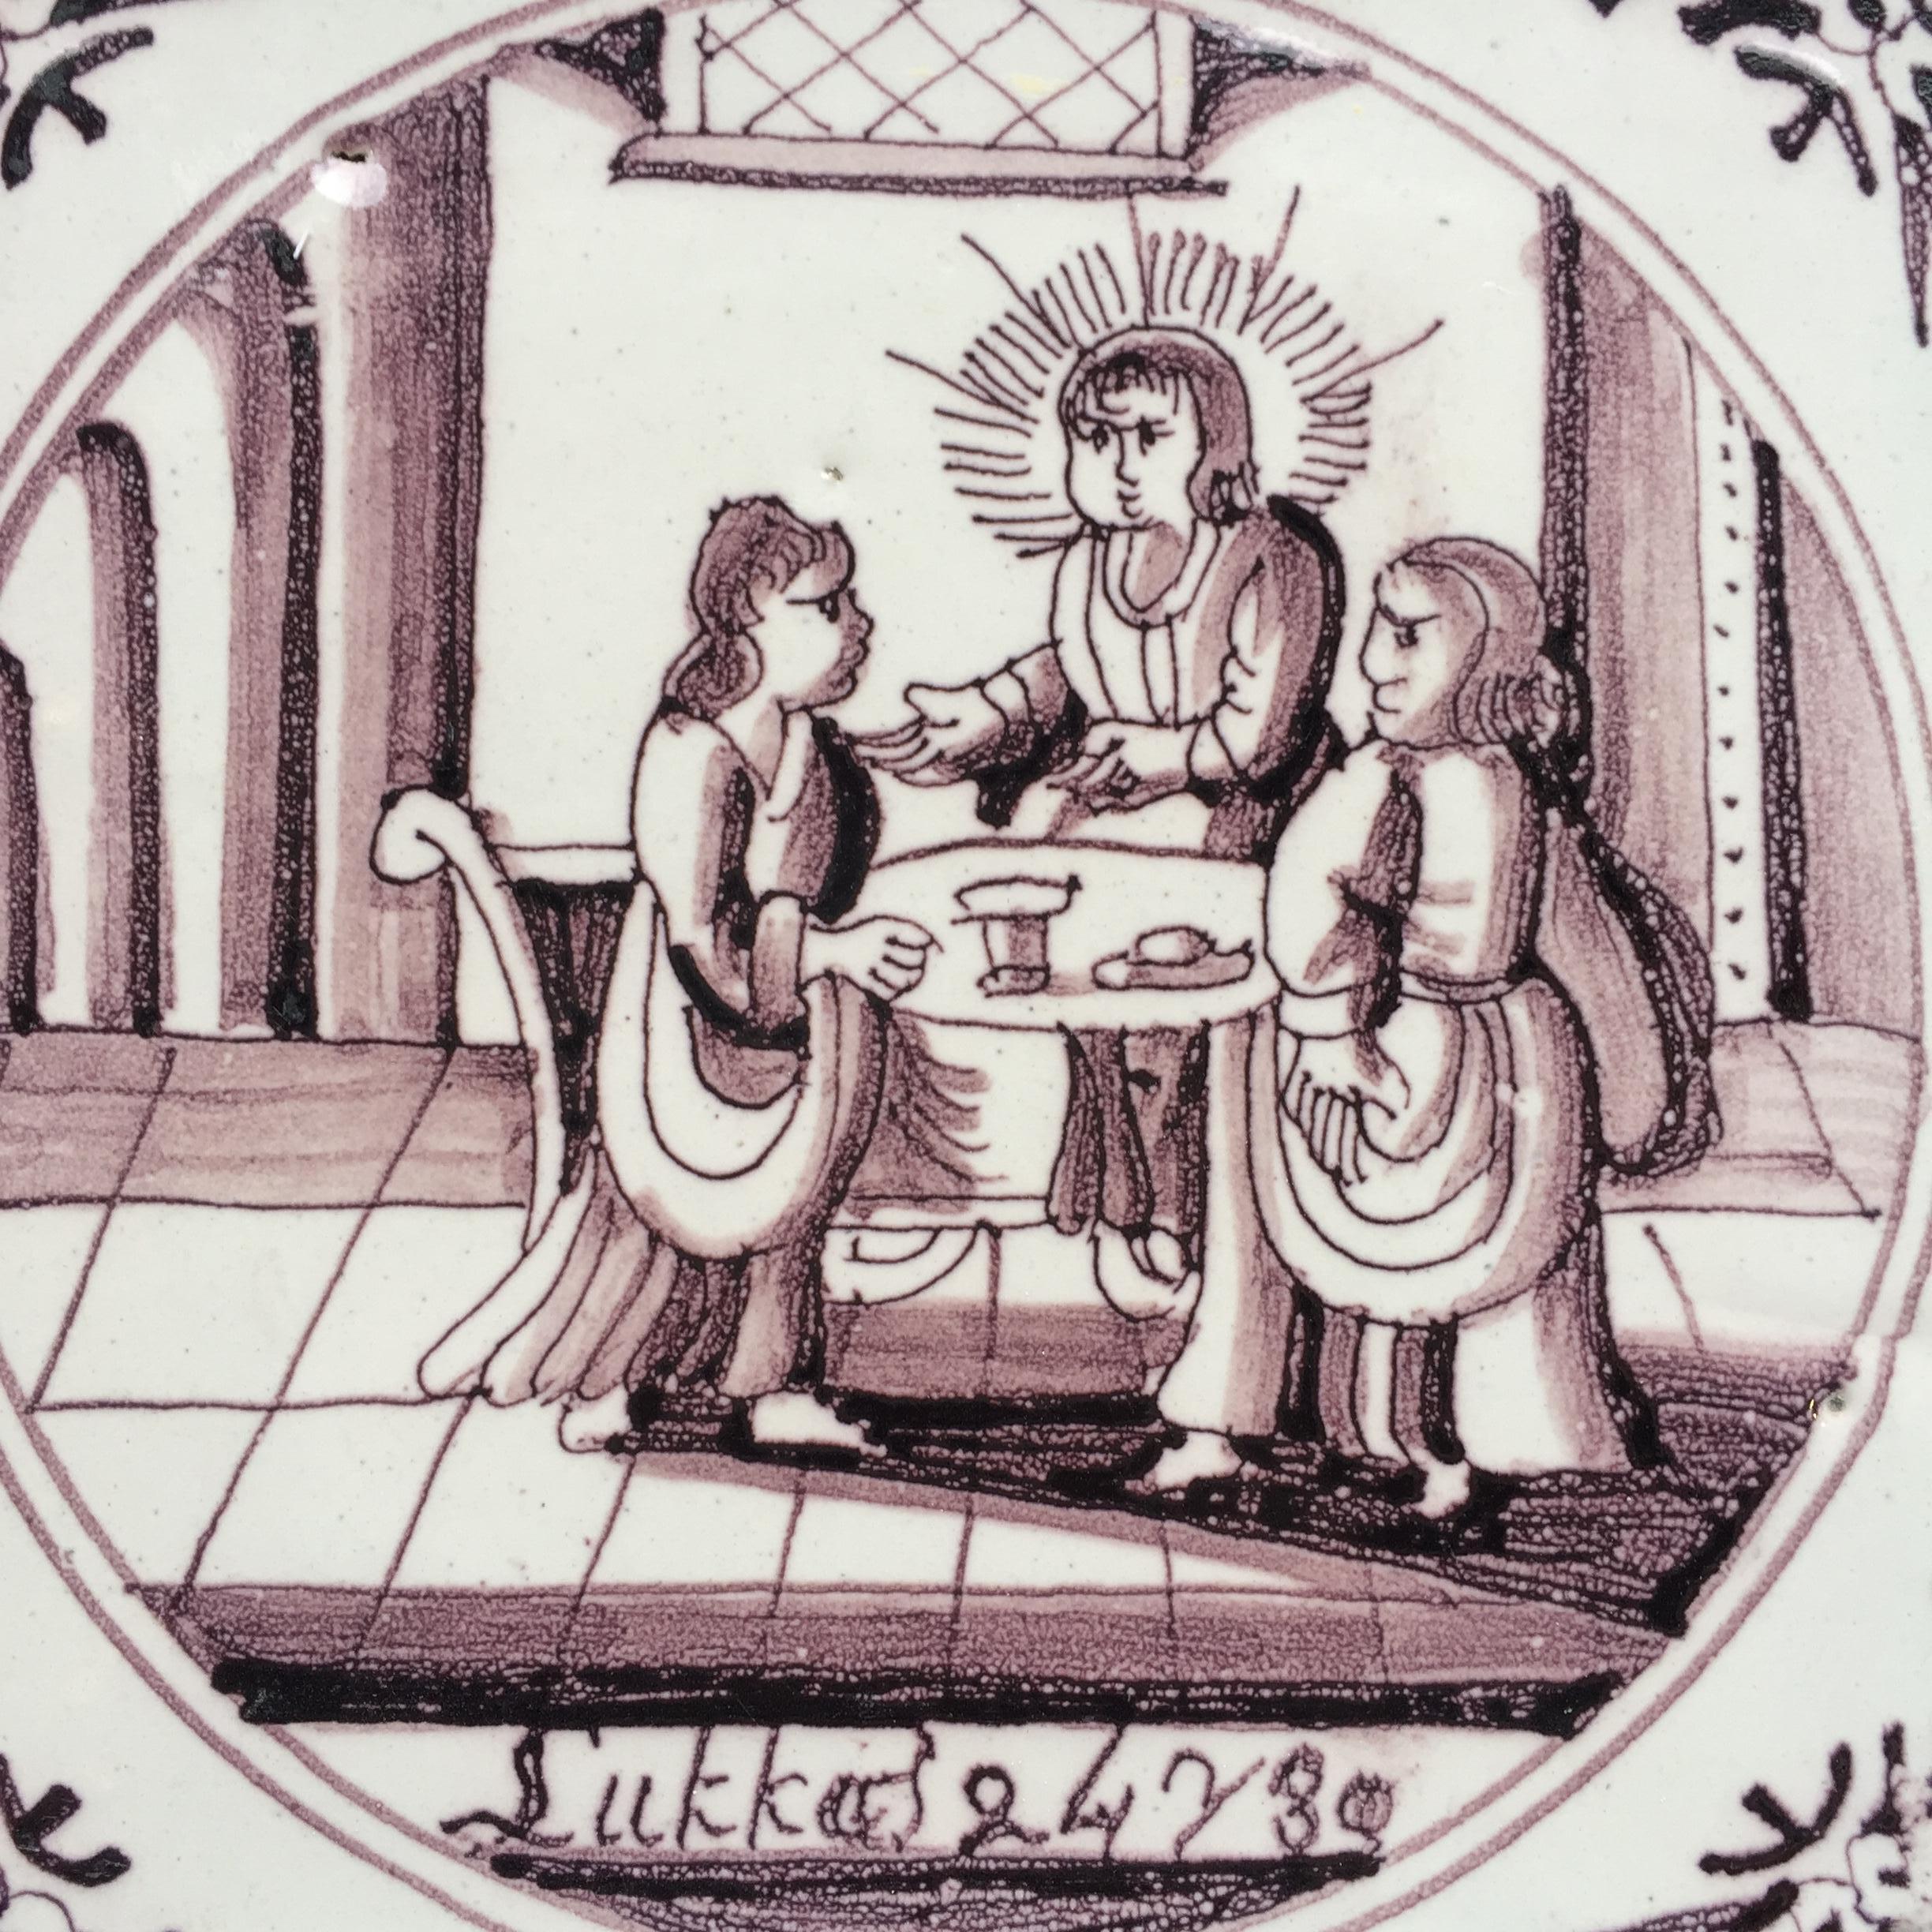 Die Niederlande
Rotterdam
CIRCA 1725 - 1775

Eine feine holländische Manganfliese mit einer biblischen Darstellung des Abendmahls in Emmaus aus dem Neuen Testament, Lukas 24, Vers 30: 